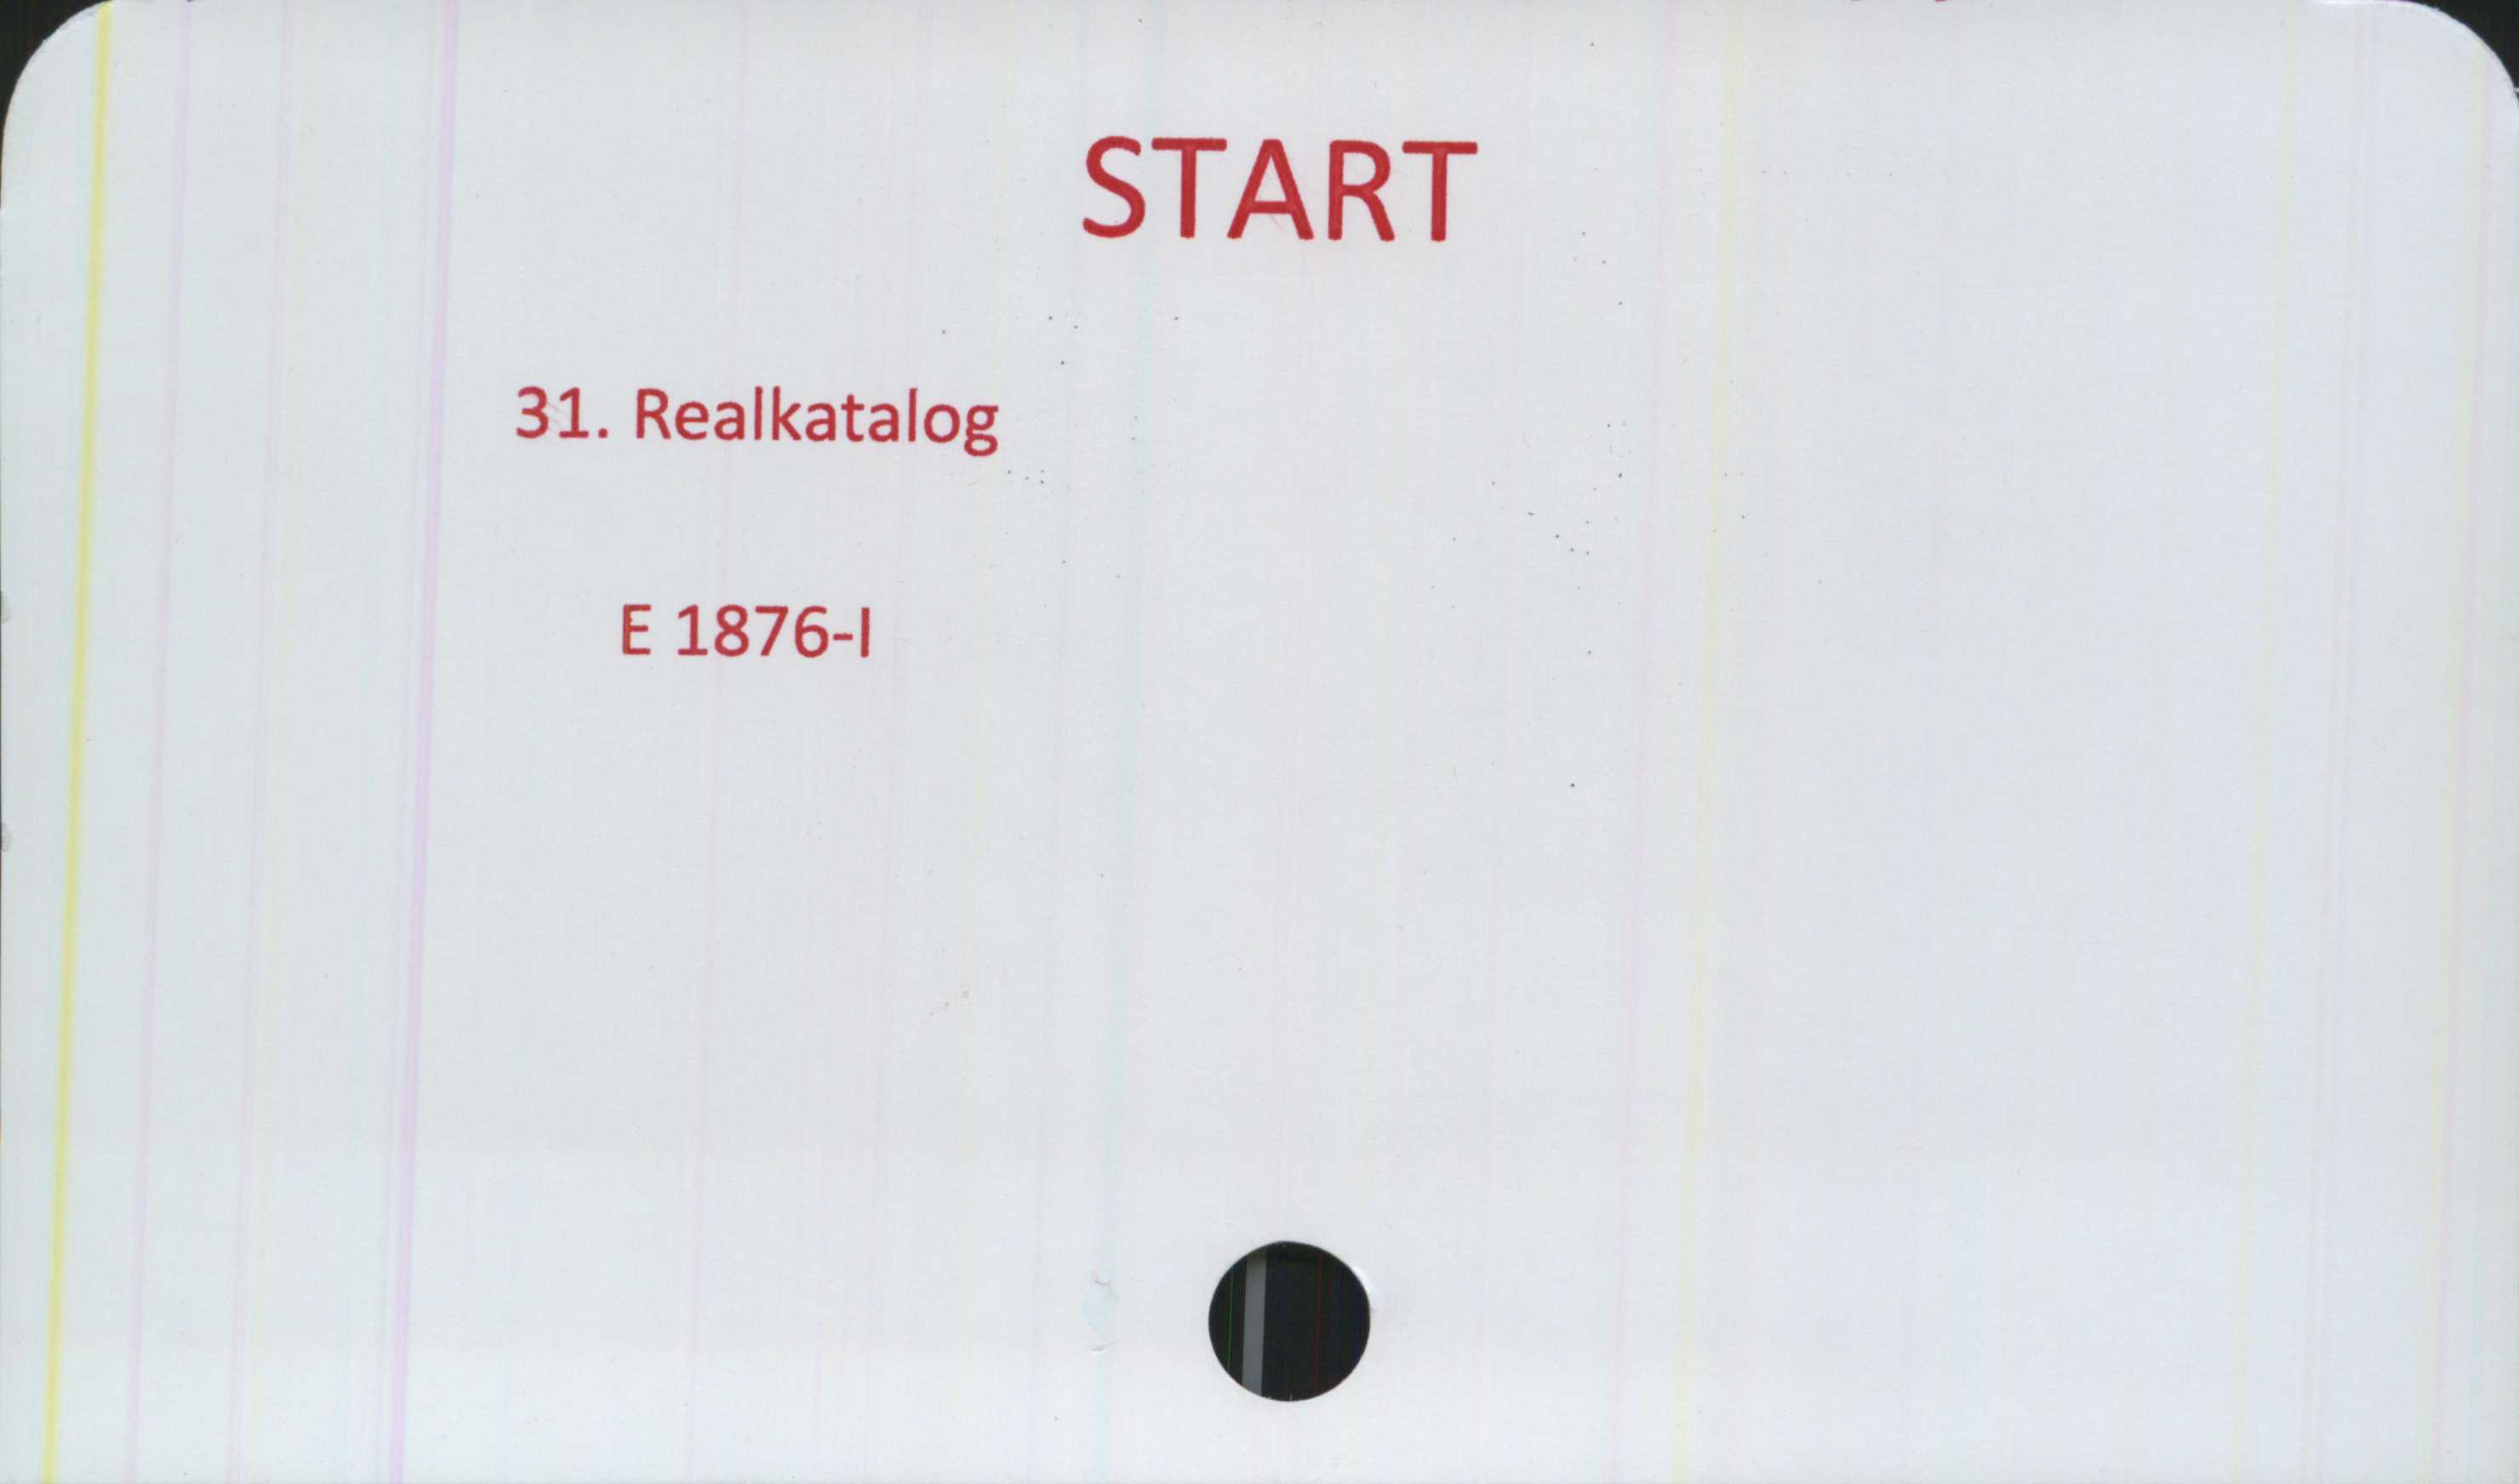  ﻿START

31. Realkatalog